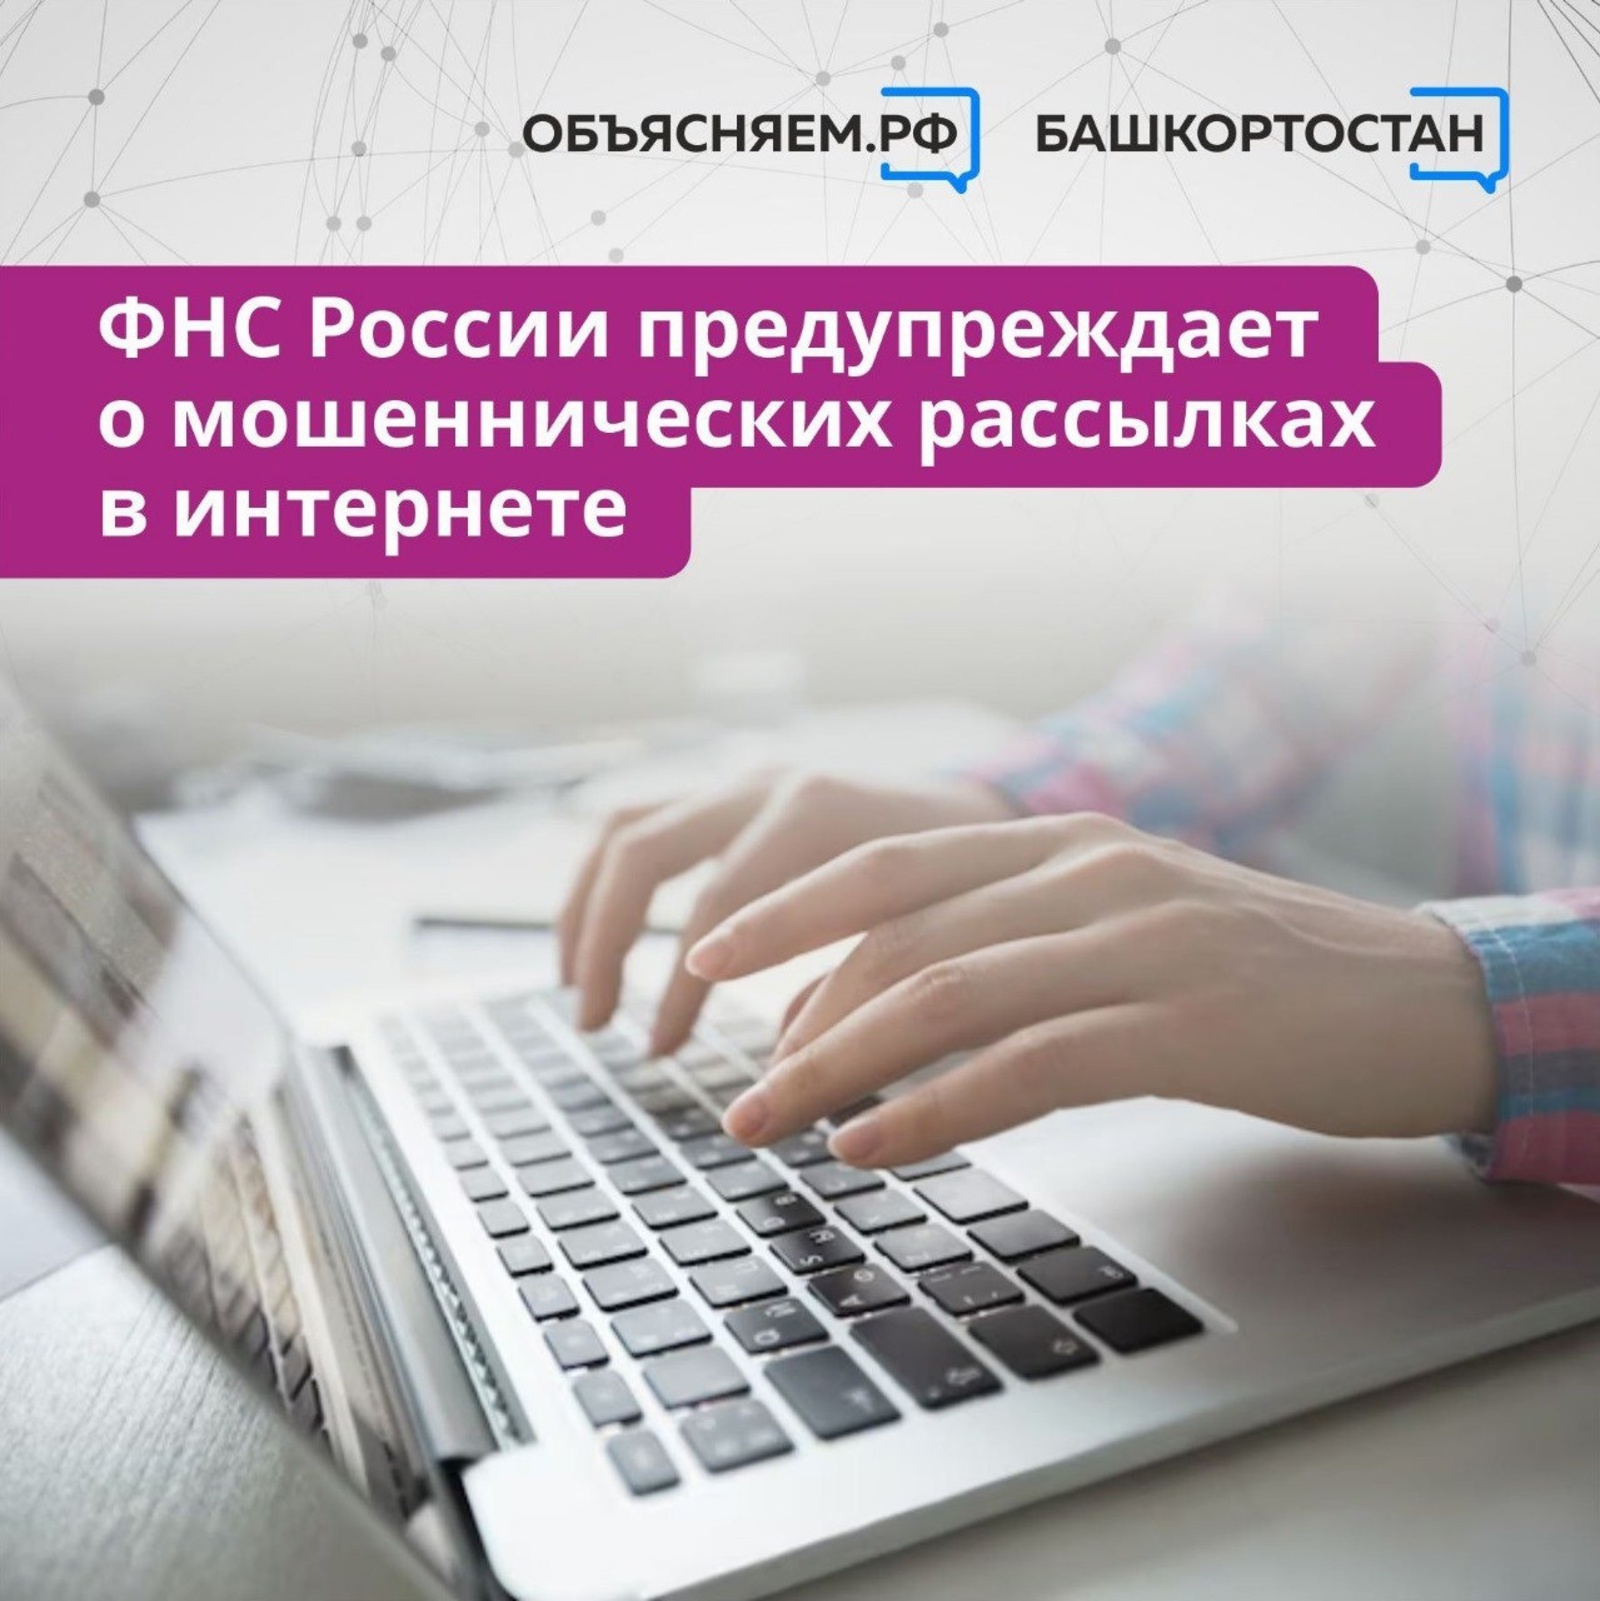 ФНС России предупреждает о мошеннических рассылках в интернете от лица налоговой службы